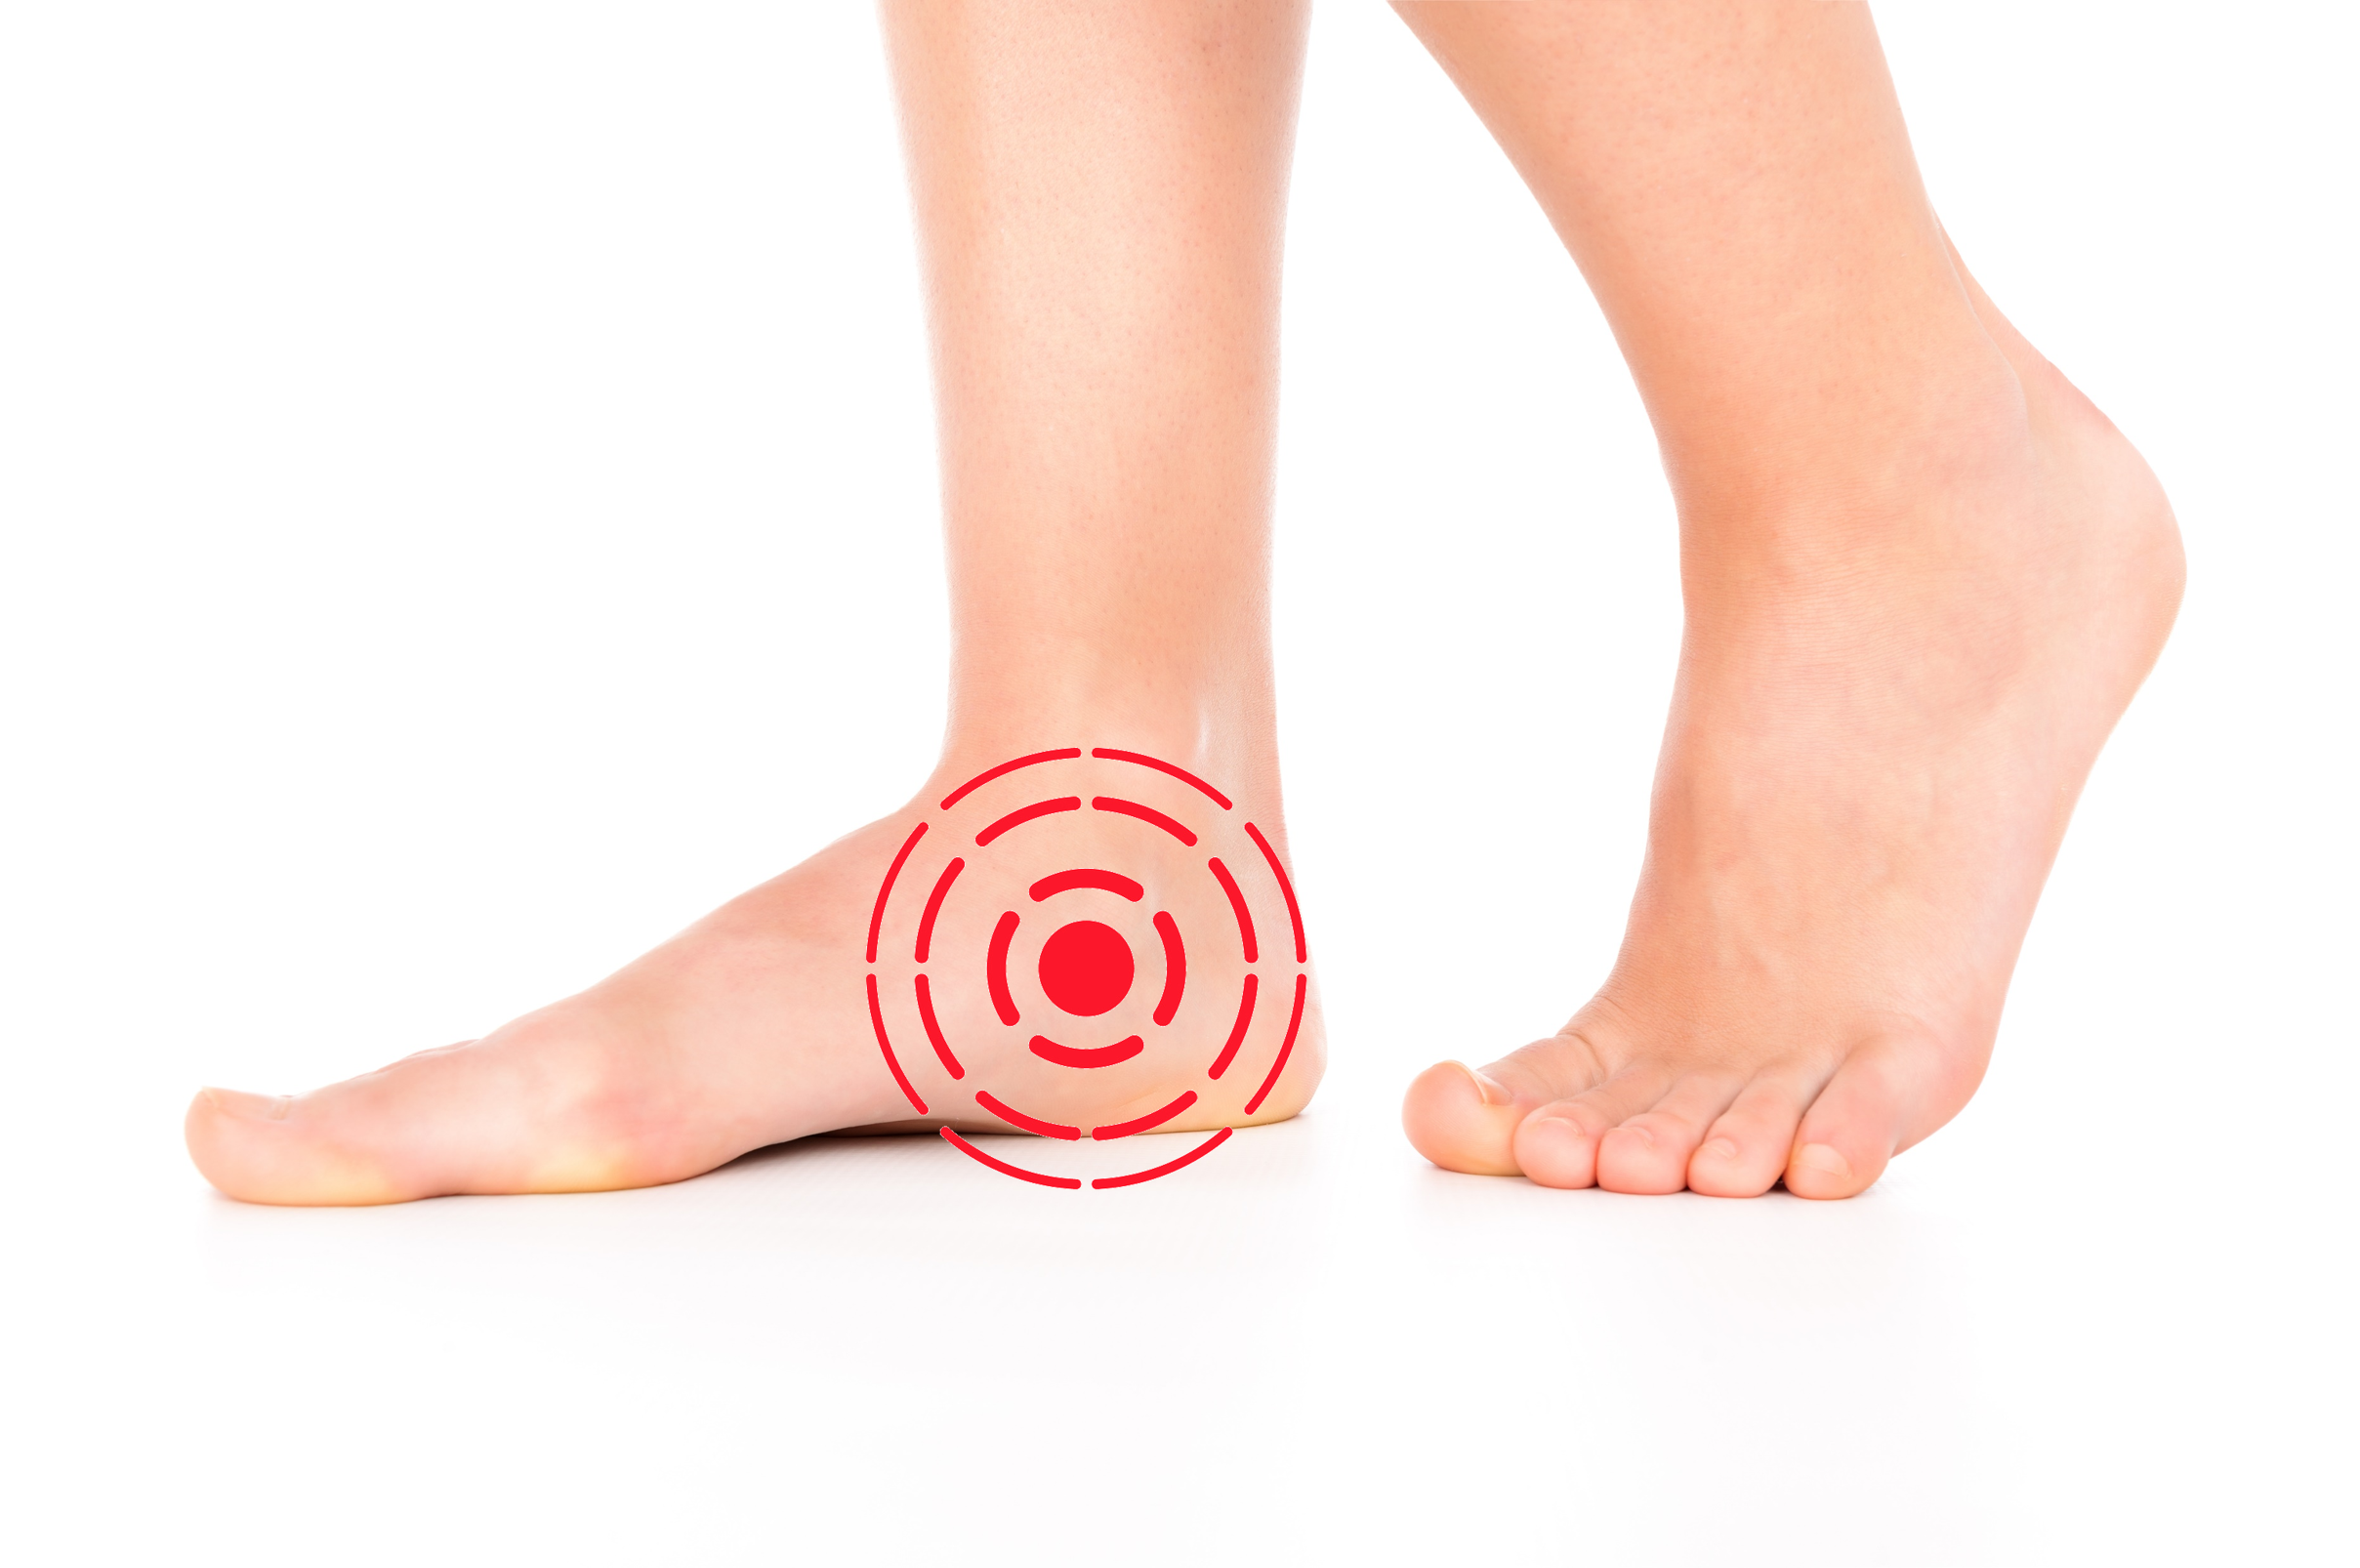 足裏の痛み
後脛骨筋腱機能不全症（PTTD）により痛みが生じる個所
足の悩みは何ですか？